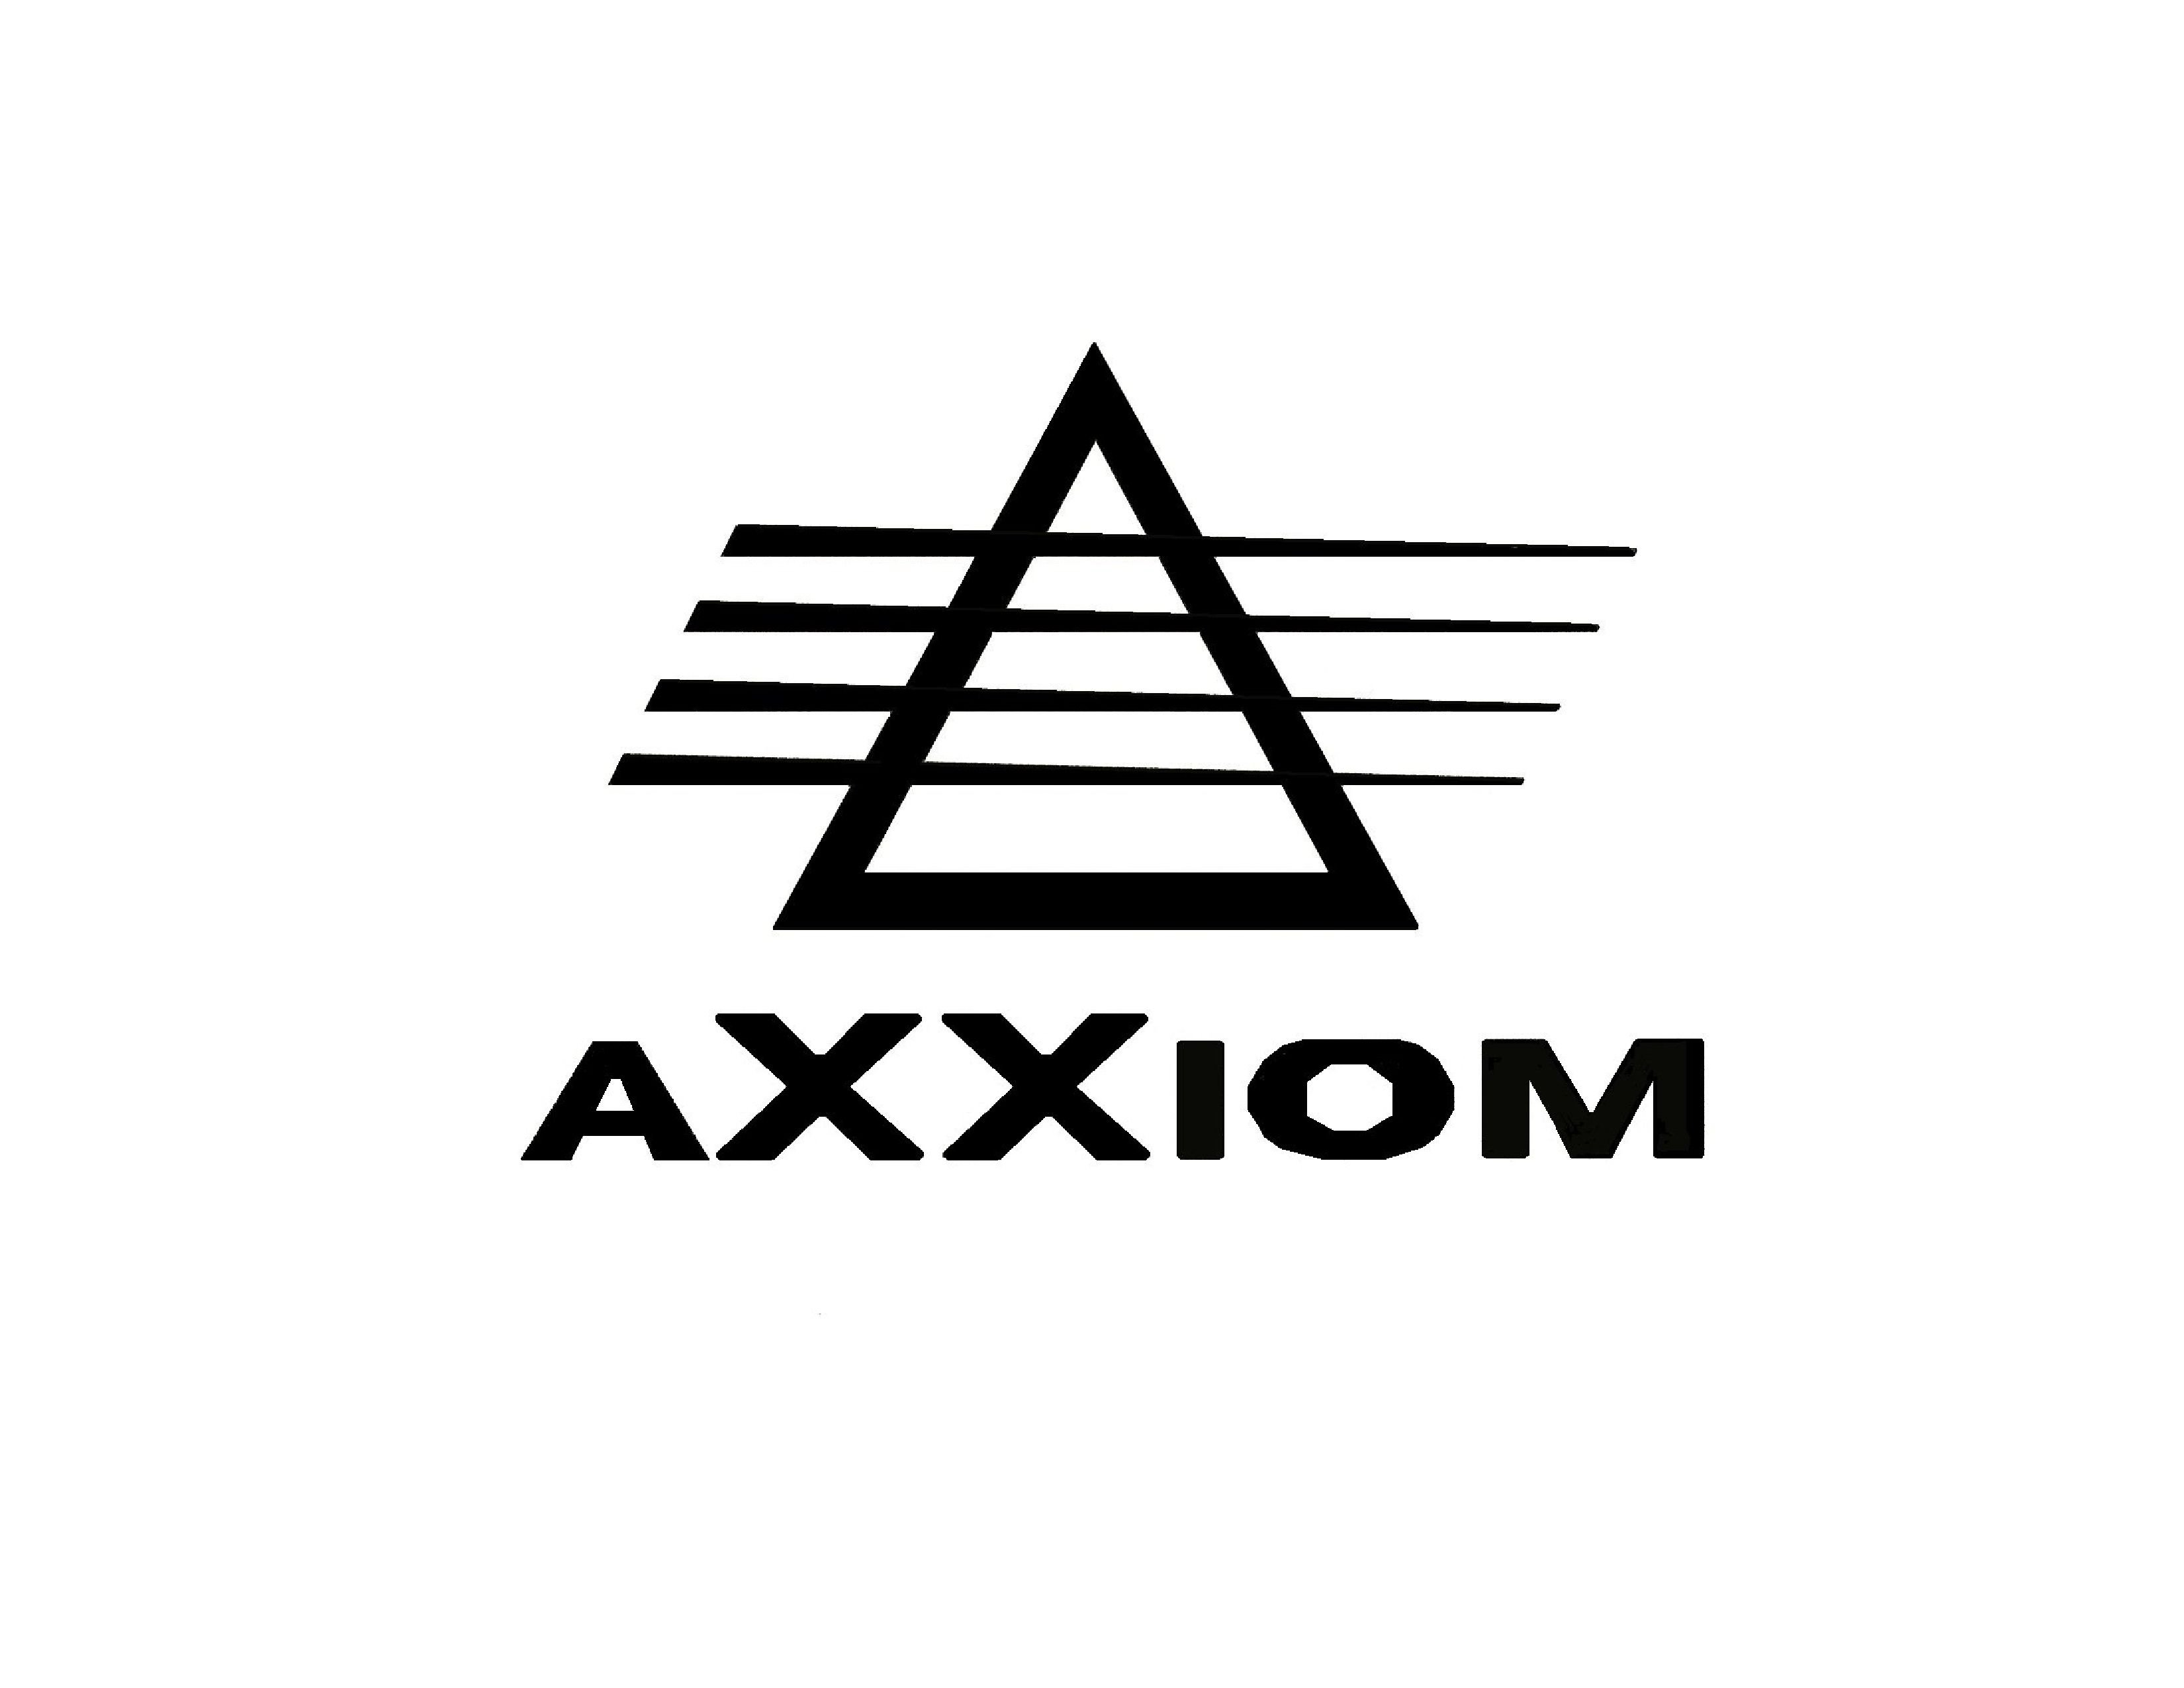 AXXIOM